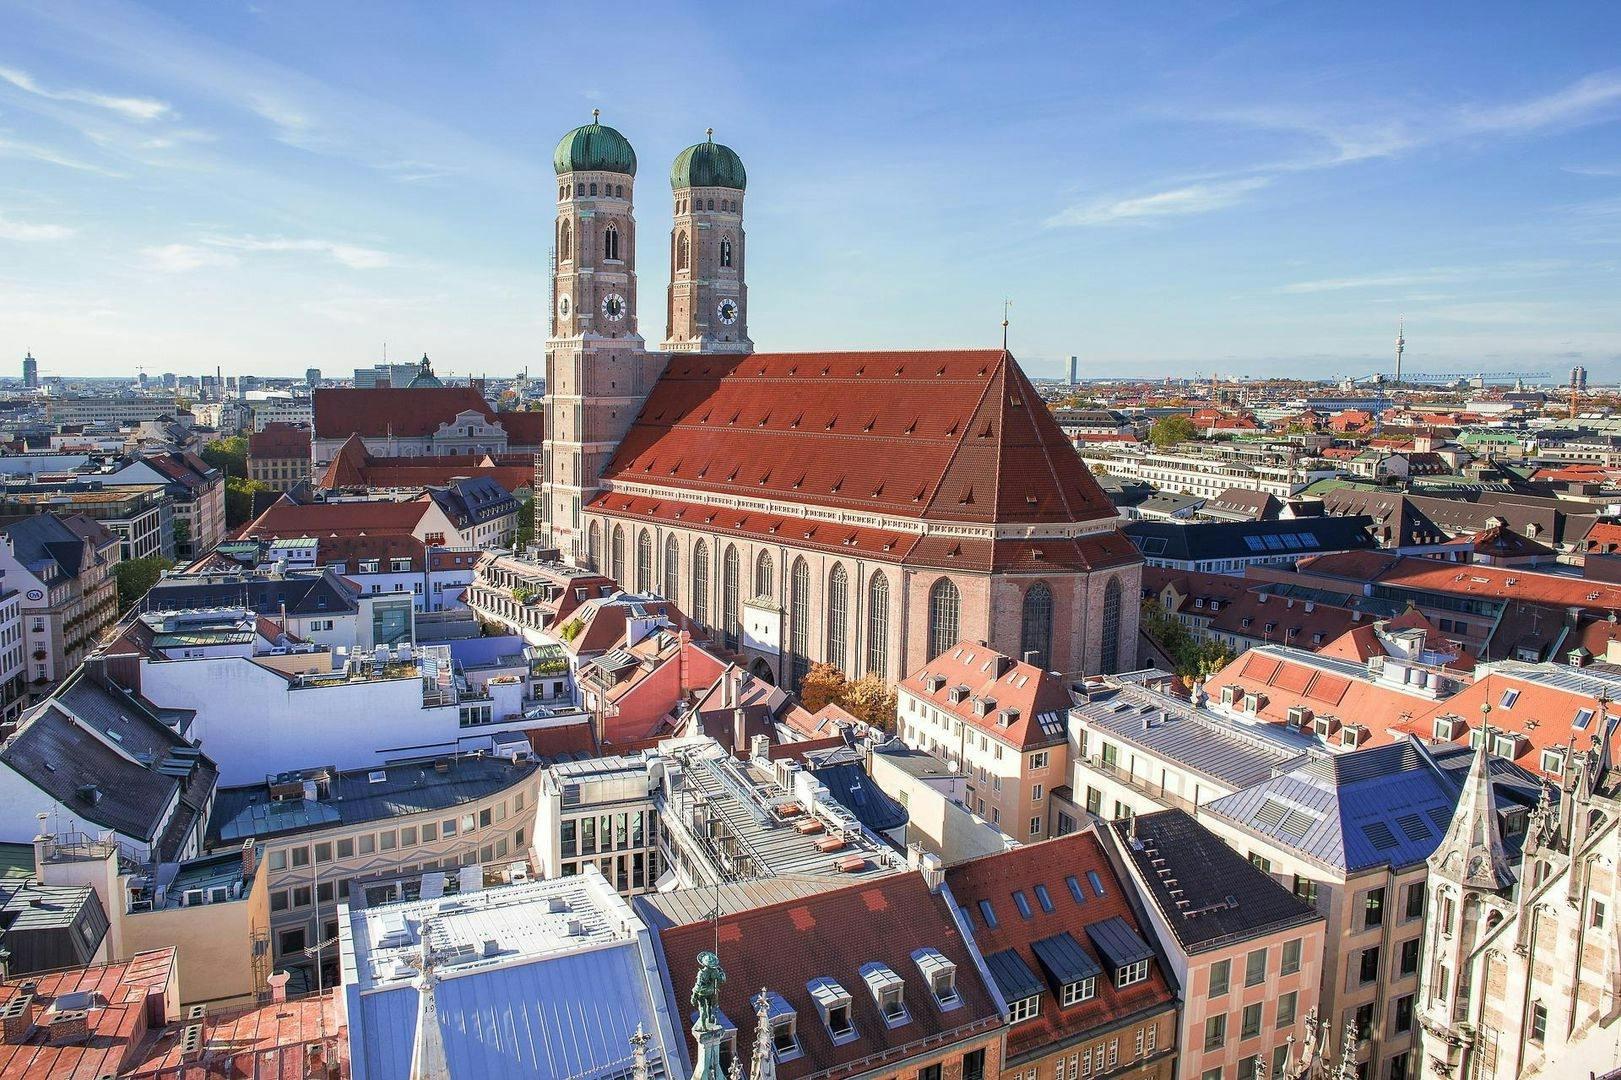 Audiowandeling door München, de hoofdstad van Beieren en bier